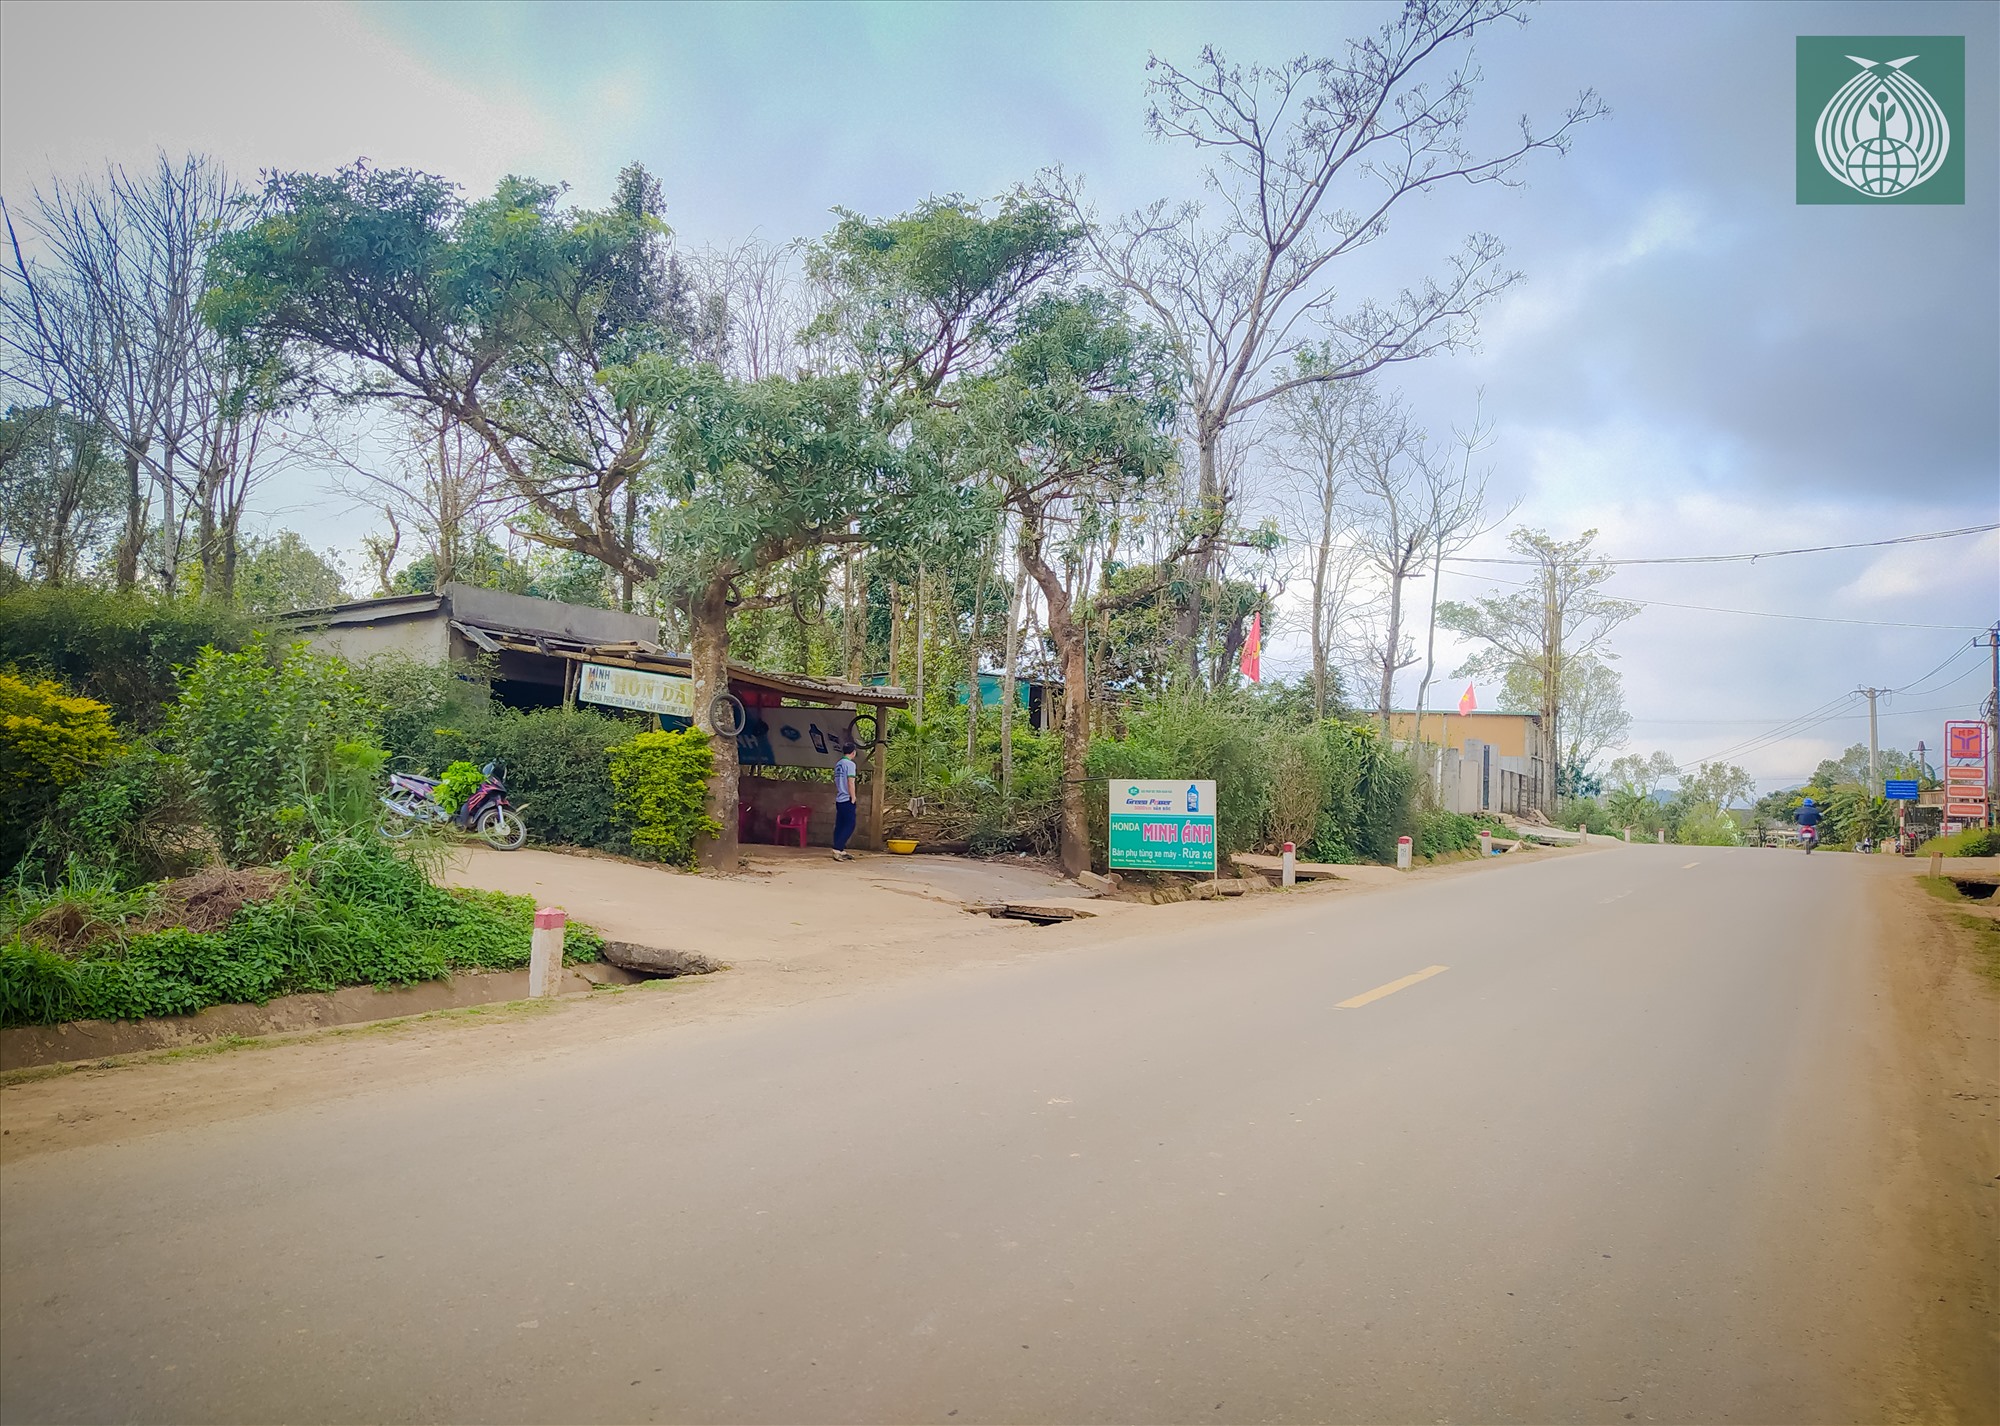 Đoạn đường bê tông nhỏ dẫn vào “Vườn hoa Chân Trời” giao nhau với đường Hồ Chí Minh tại Km4.